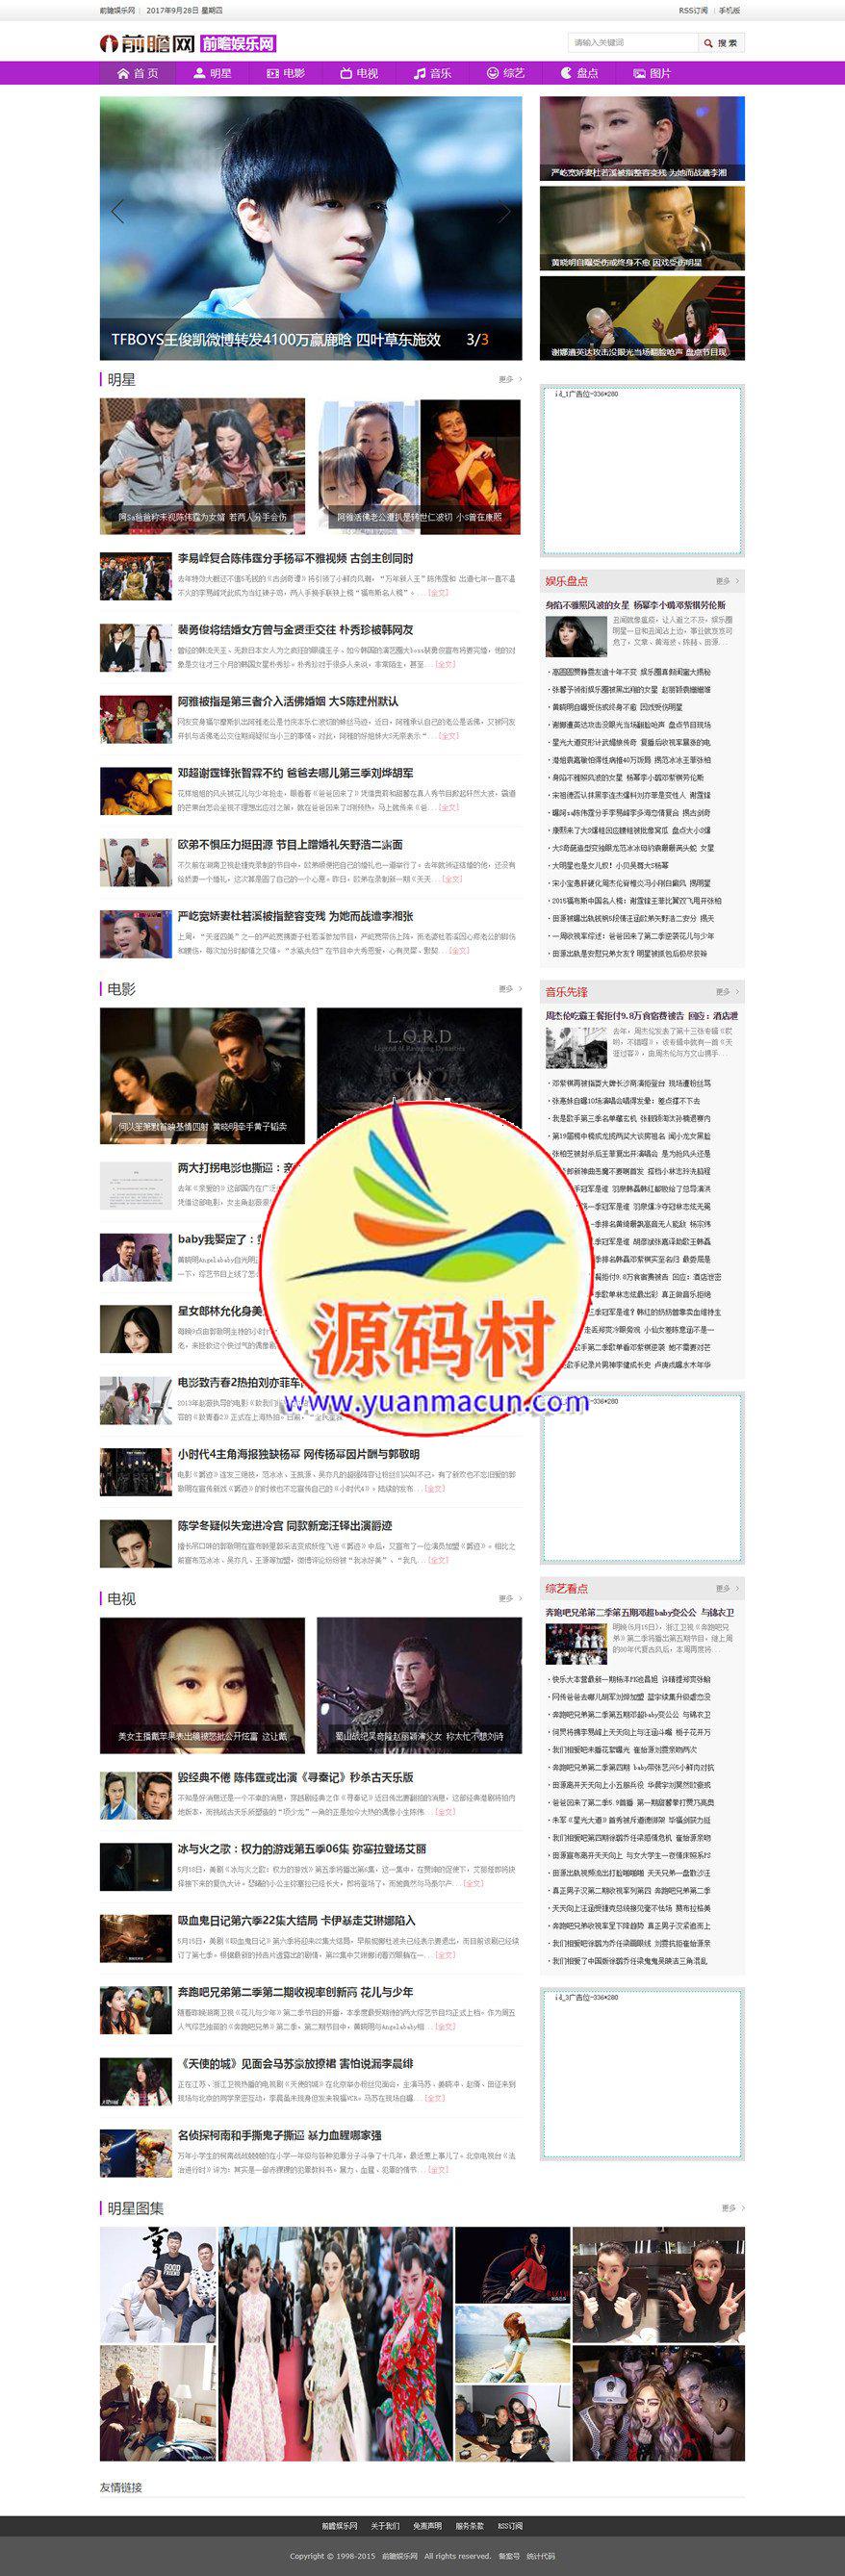 仿【前瞻娱乐】帝国CMS7.2娱乐新闻网站帝国模板下载模板下载下载,第1张